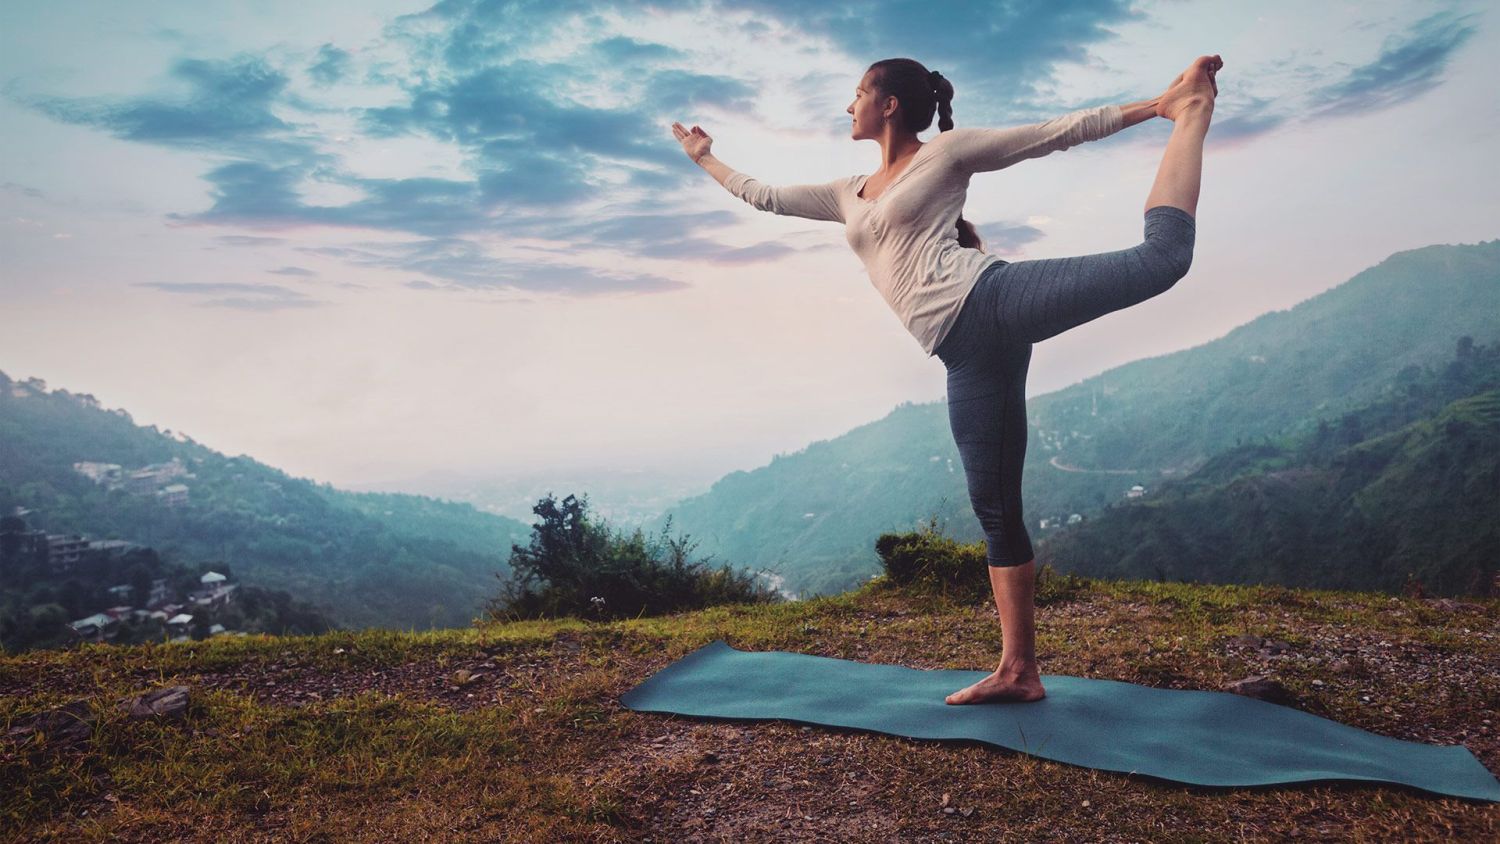 Yoga: Flexibilidad Y Fuerza En Armonía